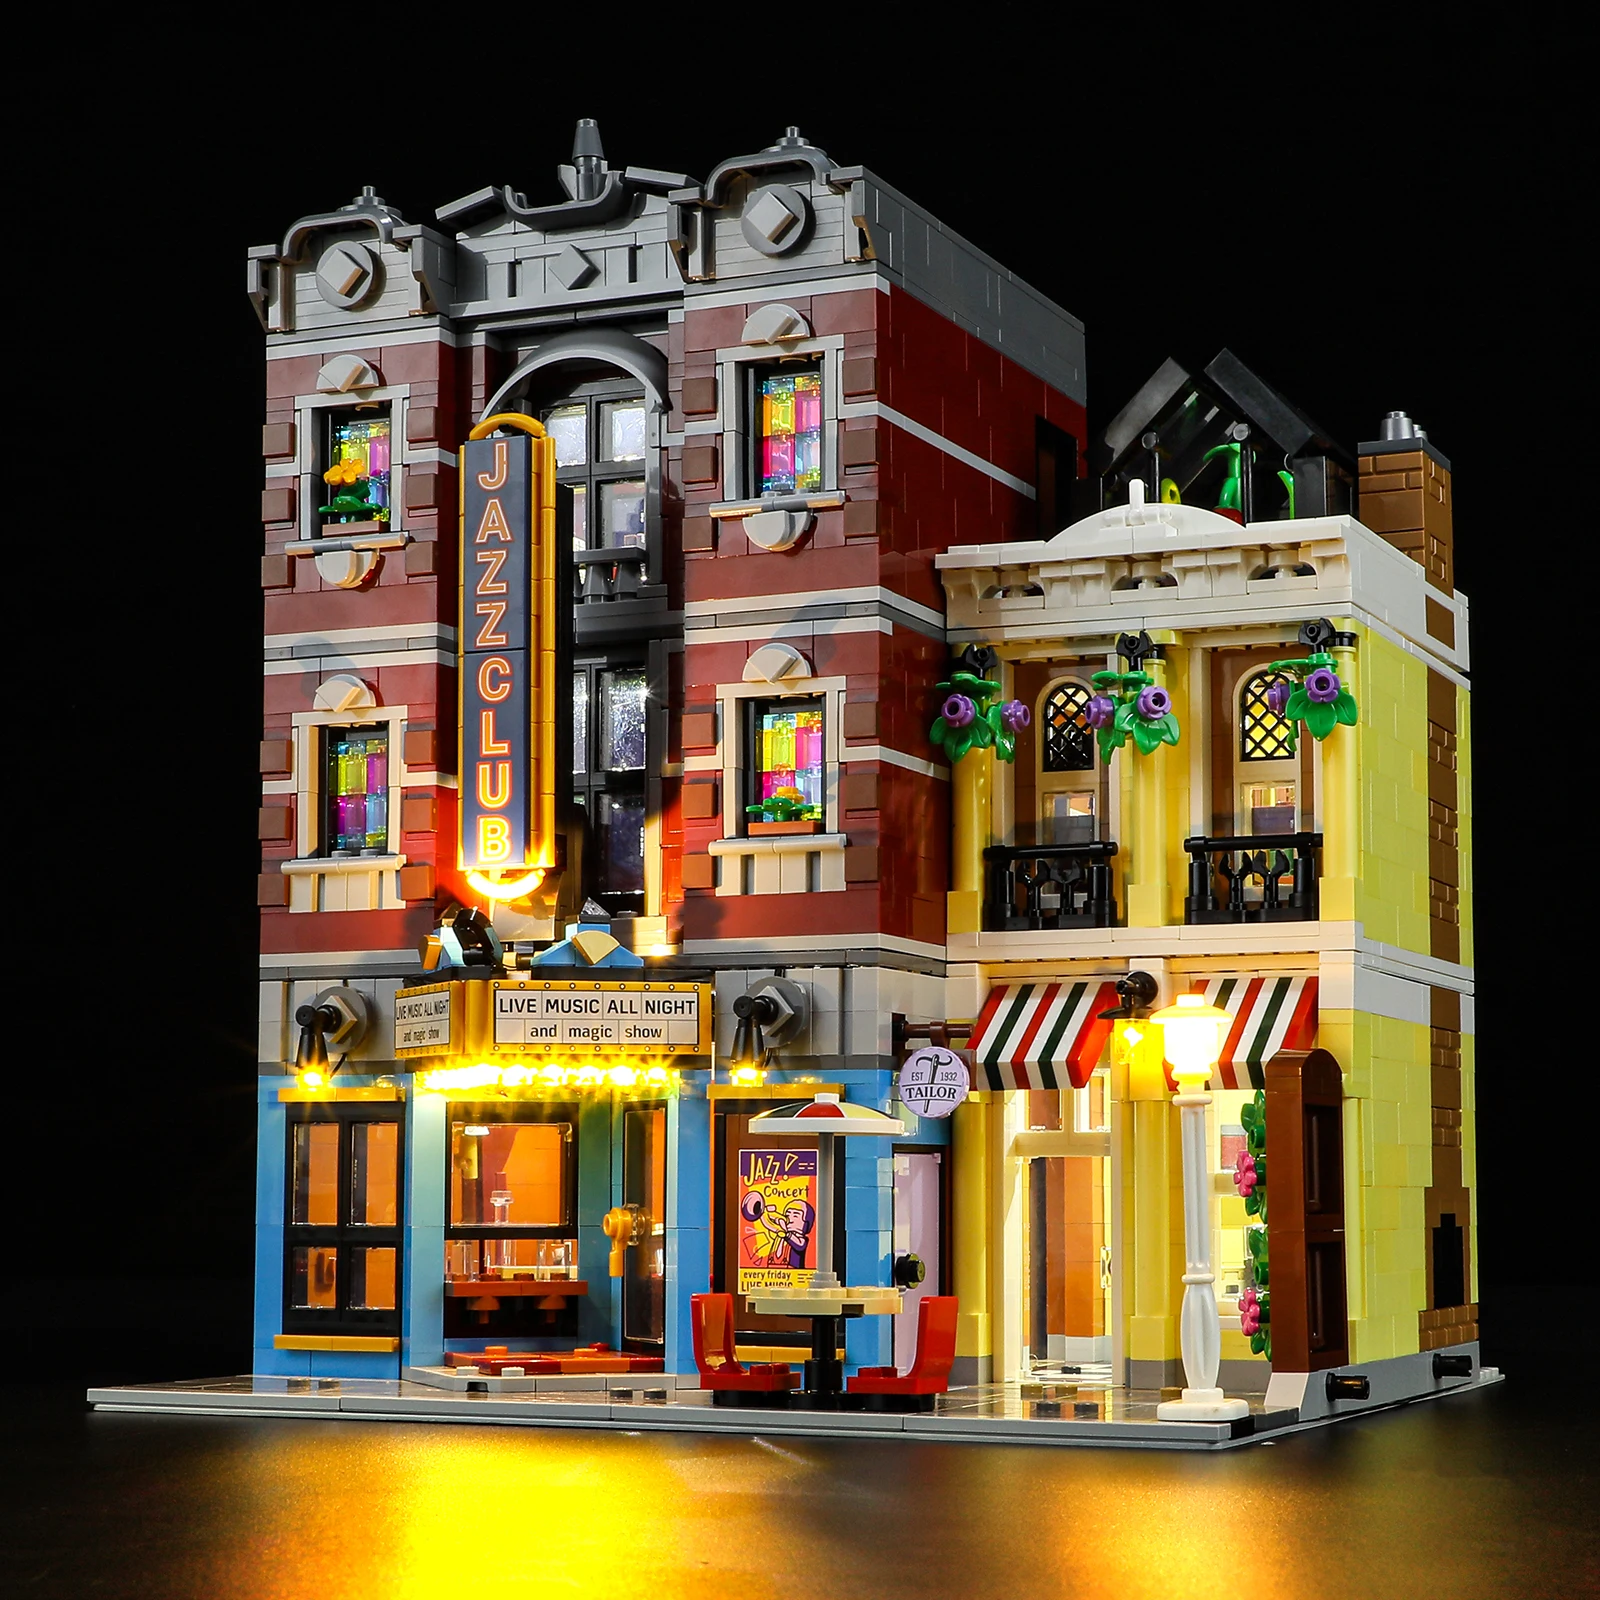 

Lightaling Led Light Kit for 10312 Jazz Club Building Blocks Set (NOT Include the Model) Bricks Toys for Children